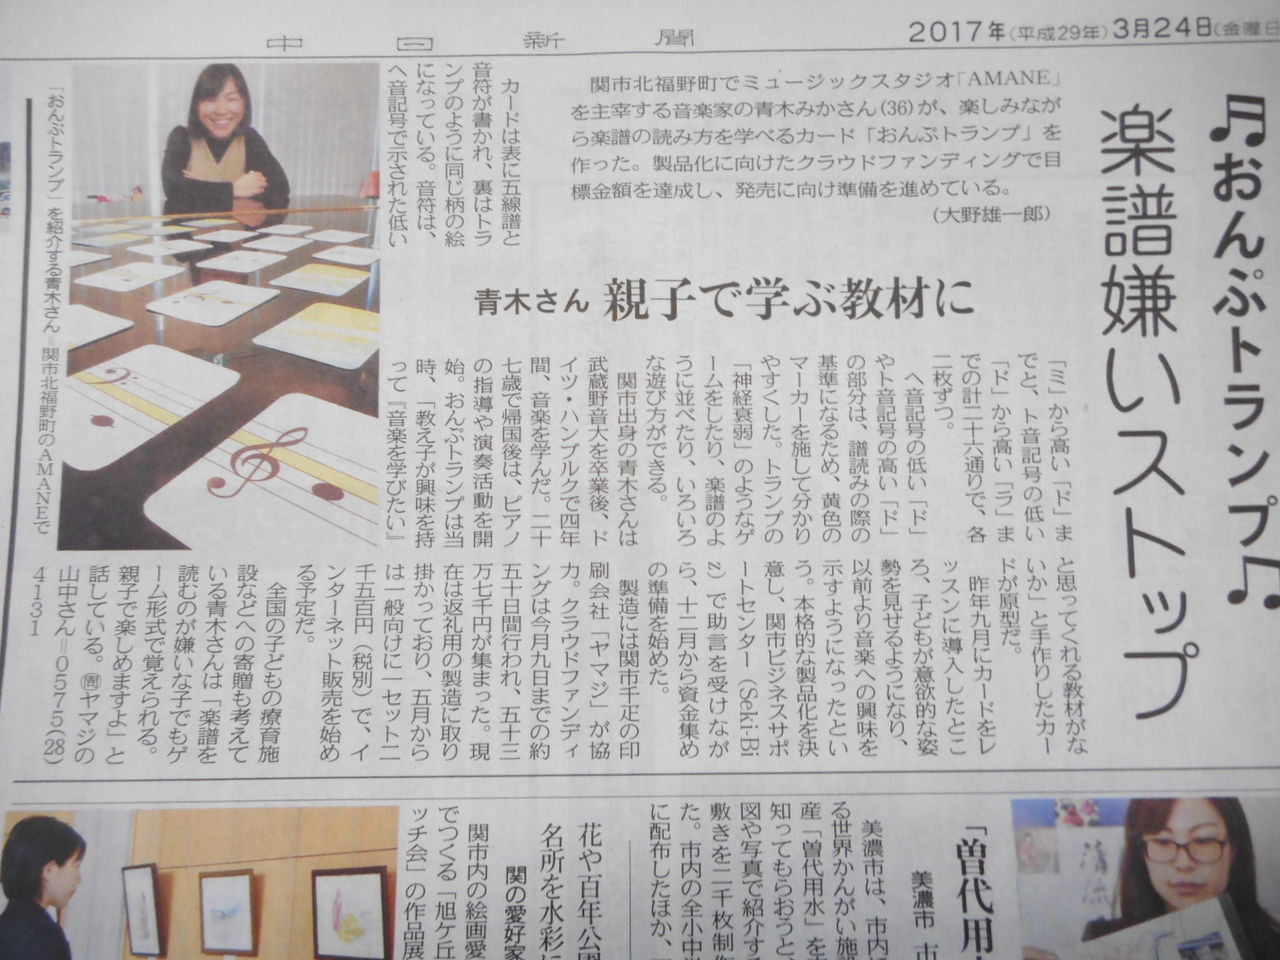 Seki Biz セキビズ 支援 おんぷトランプ 青木みかさん が中日新聞に掲載されました 関市ビジネスサポートセンター Seki Biz セキビズ の日記